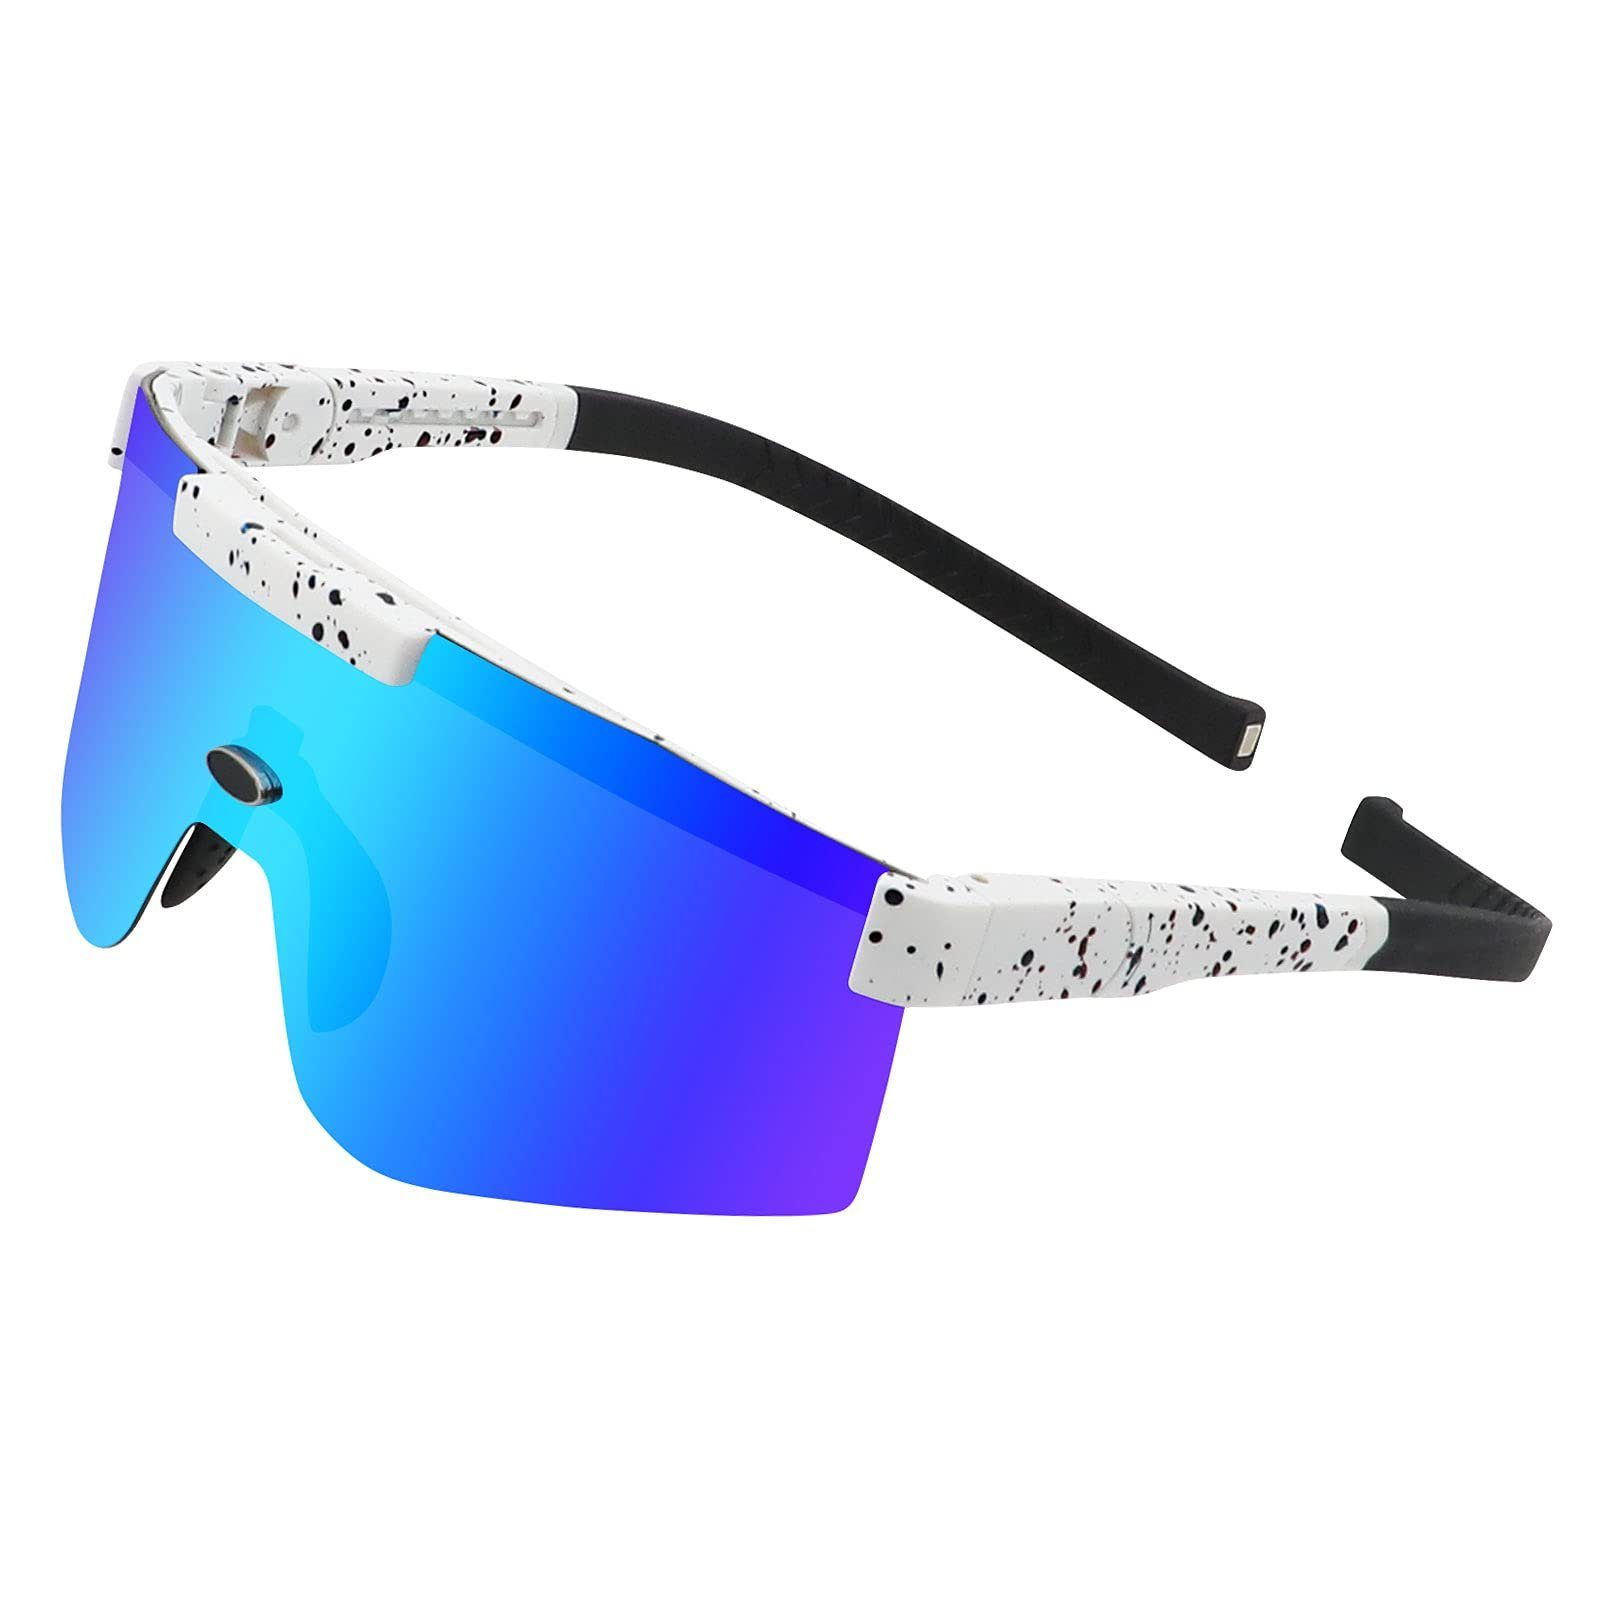 Leway Brille »Sportbrille, Reitbrille, polarisierte Sonnenbrille UV400 verstellbare  Brille für Männer und Frauen, geeignet zum Radfahren, Laufen, Angeln,  Baseball« online kaufen | OTTO